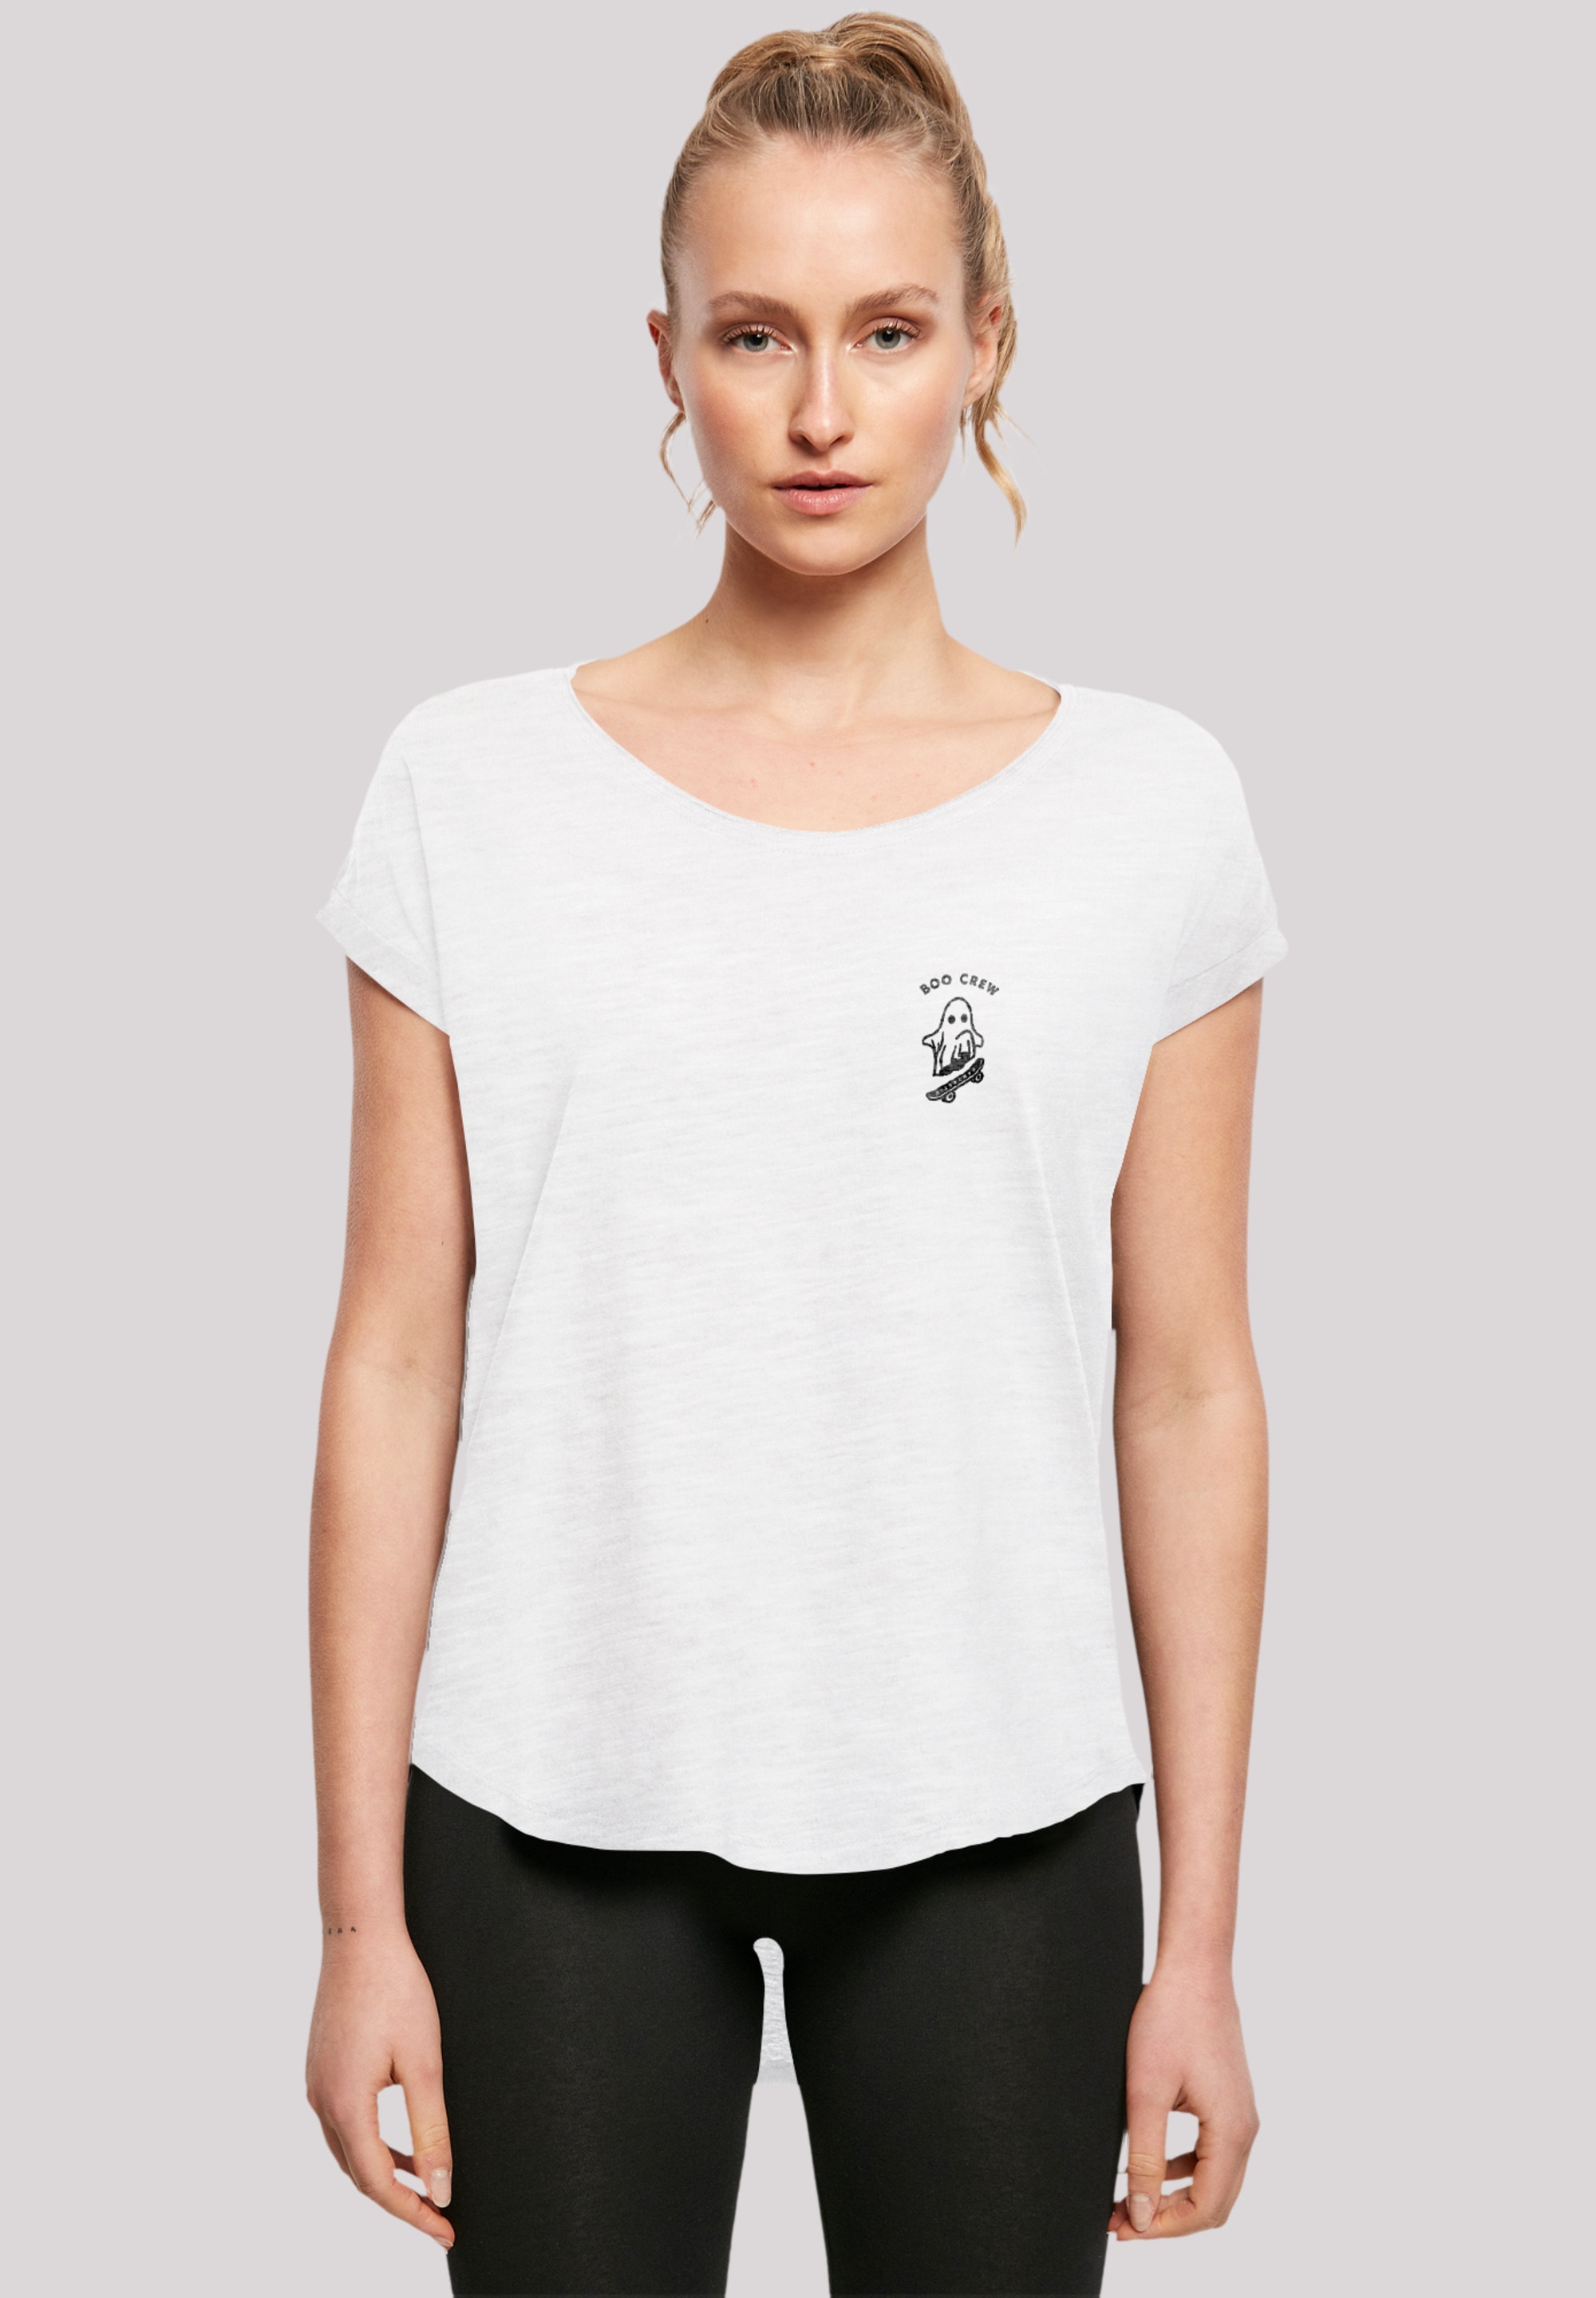 F4NT4STIC T-Shirt »Boo Crew Halloween«, Print online kaufen | I\'m walking | T-Shirts